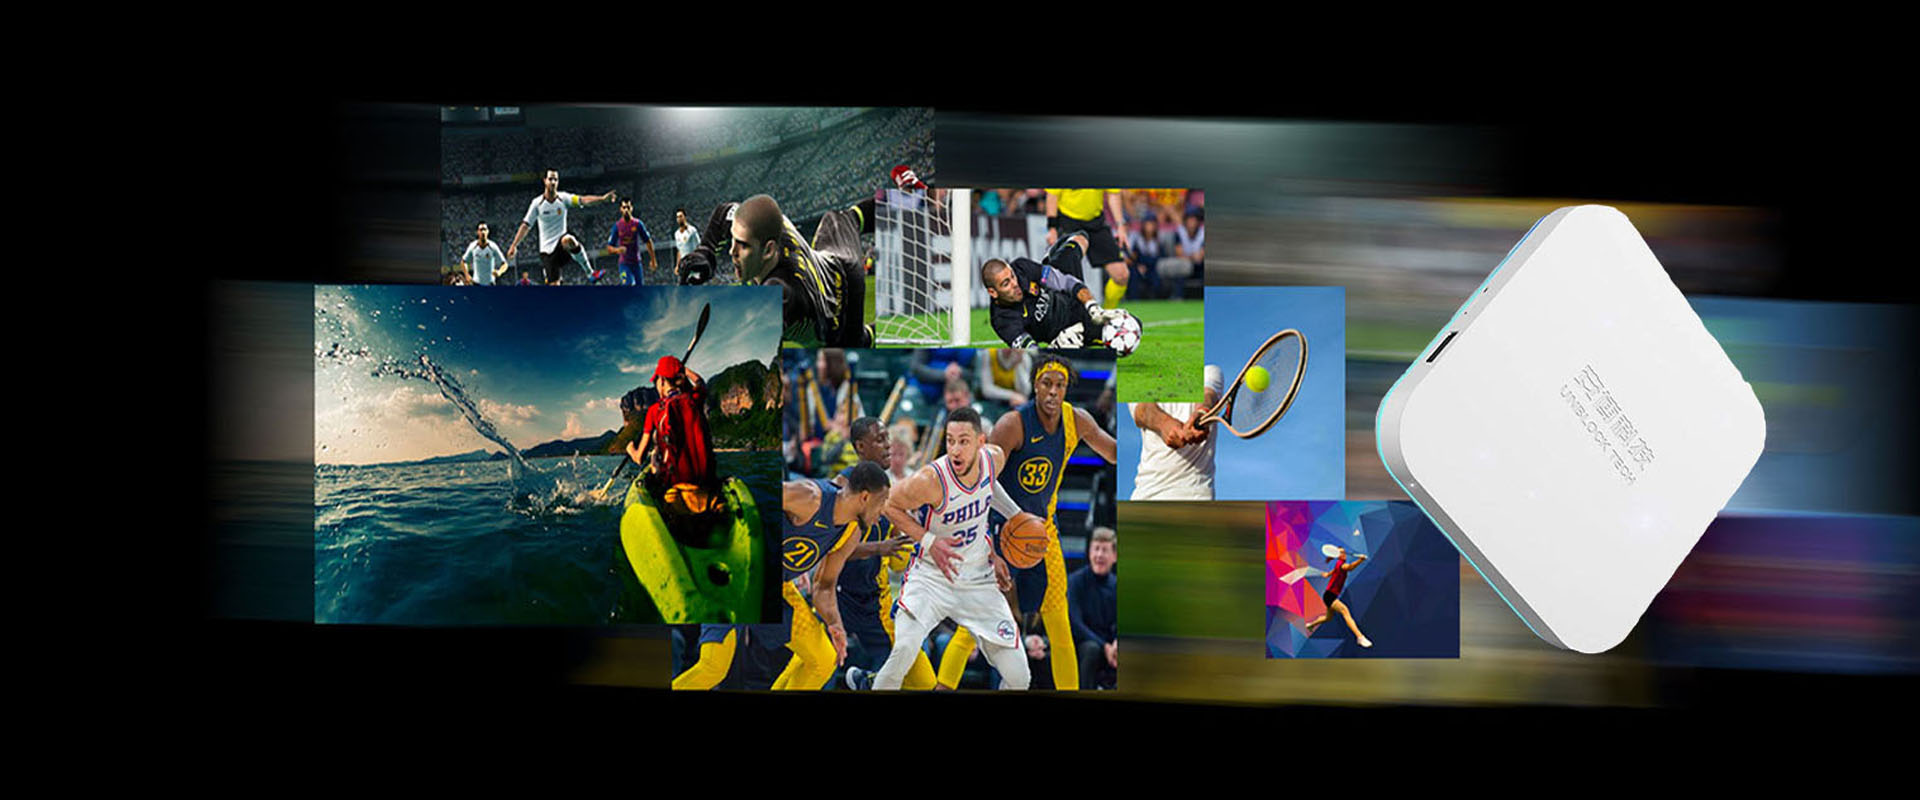 UNBLOCK TECH UBOX8 - Box TV sportivo su misura per gli appassionati di sport